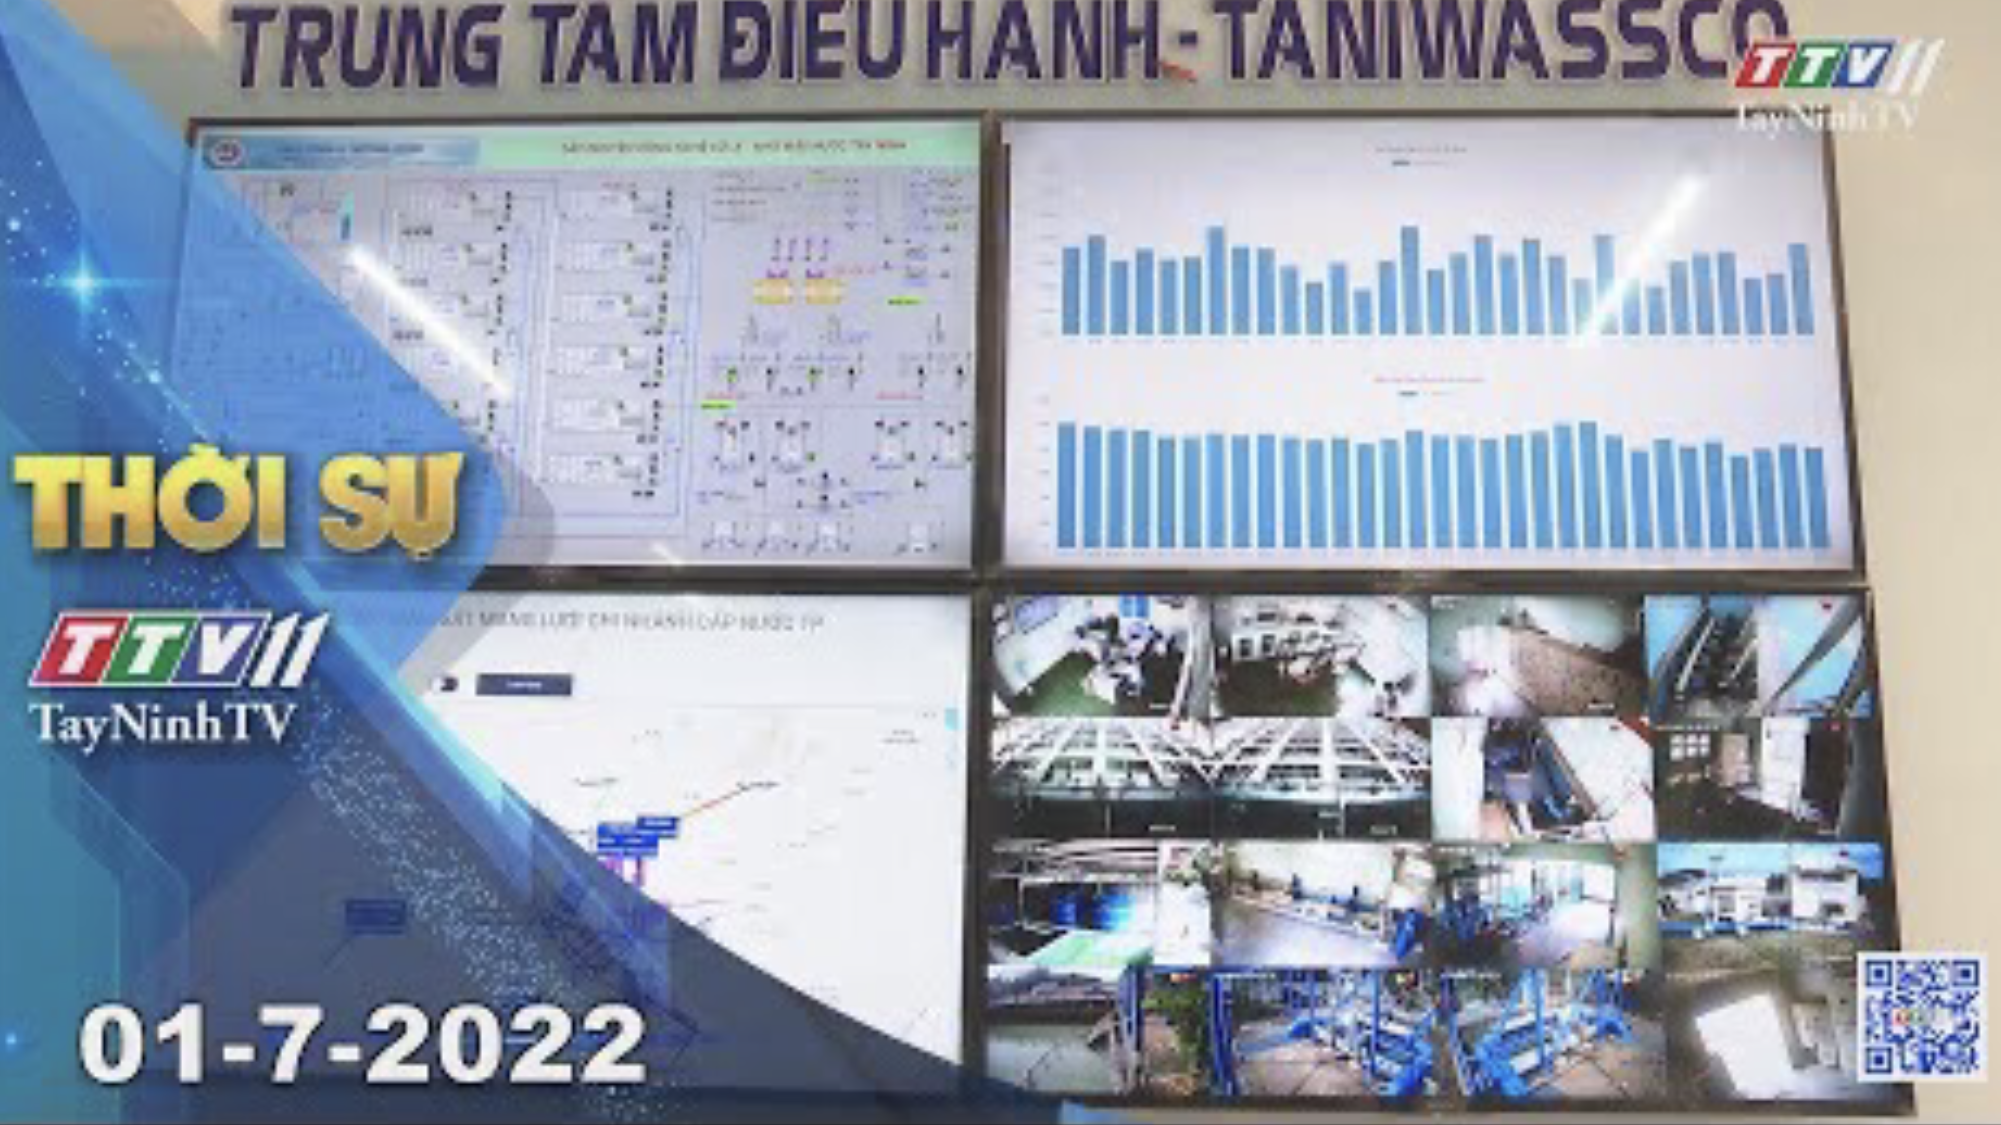 Thời sự Tây Ninh 01-7-2022 | Tin tức hôm nay | TayNinhTV